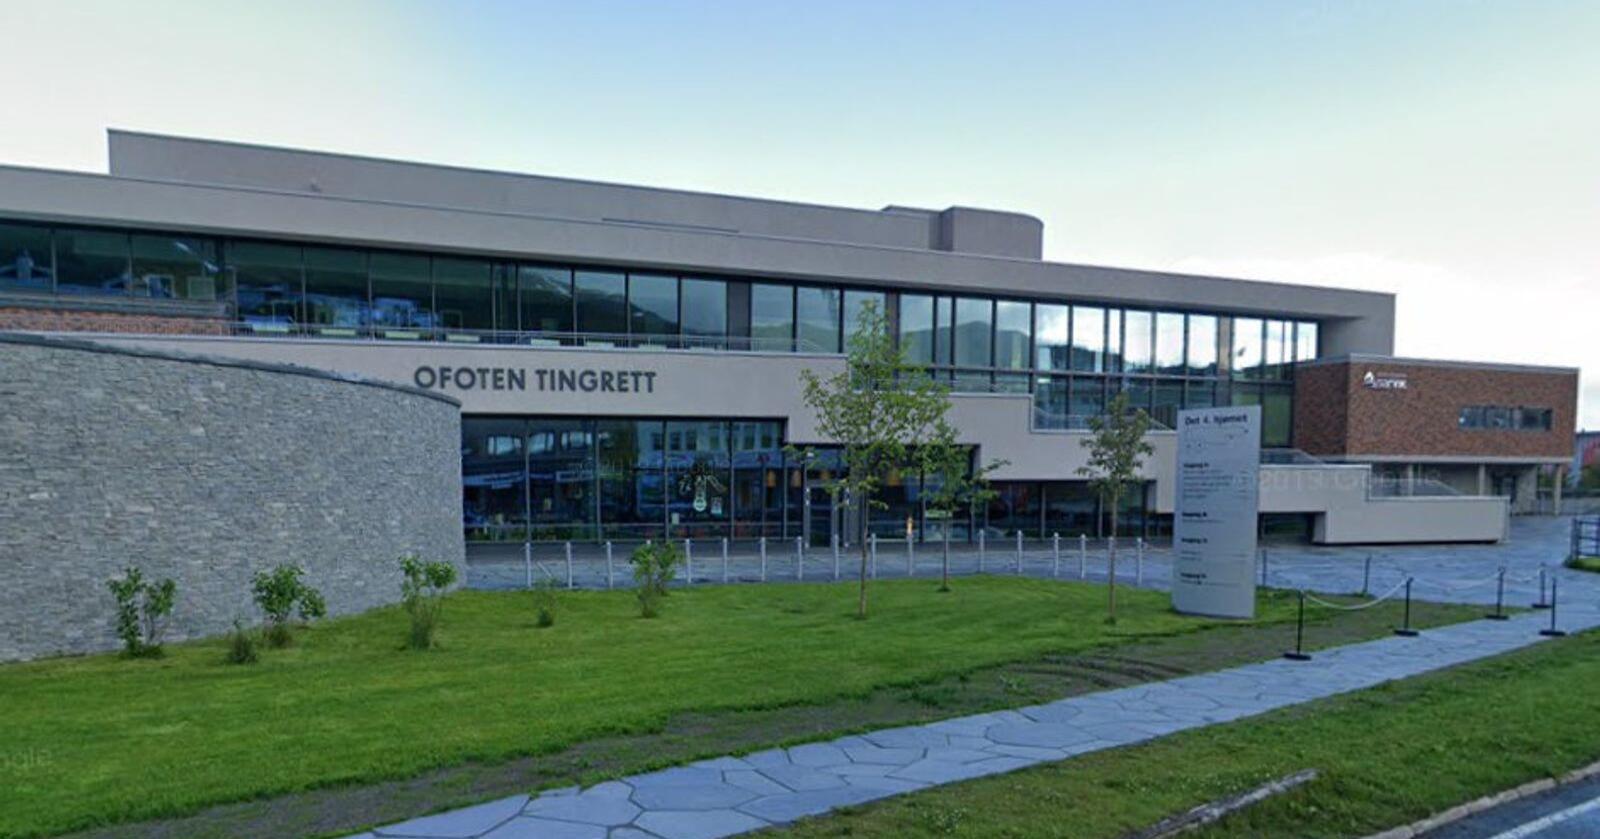 10 kommuner i to fylker er tilknyttet Ofoten tingrett i Narvik